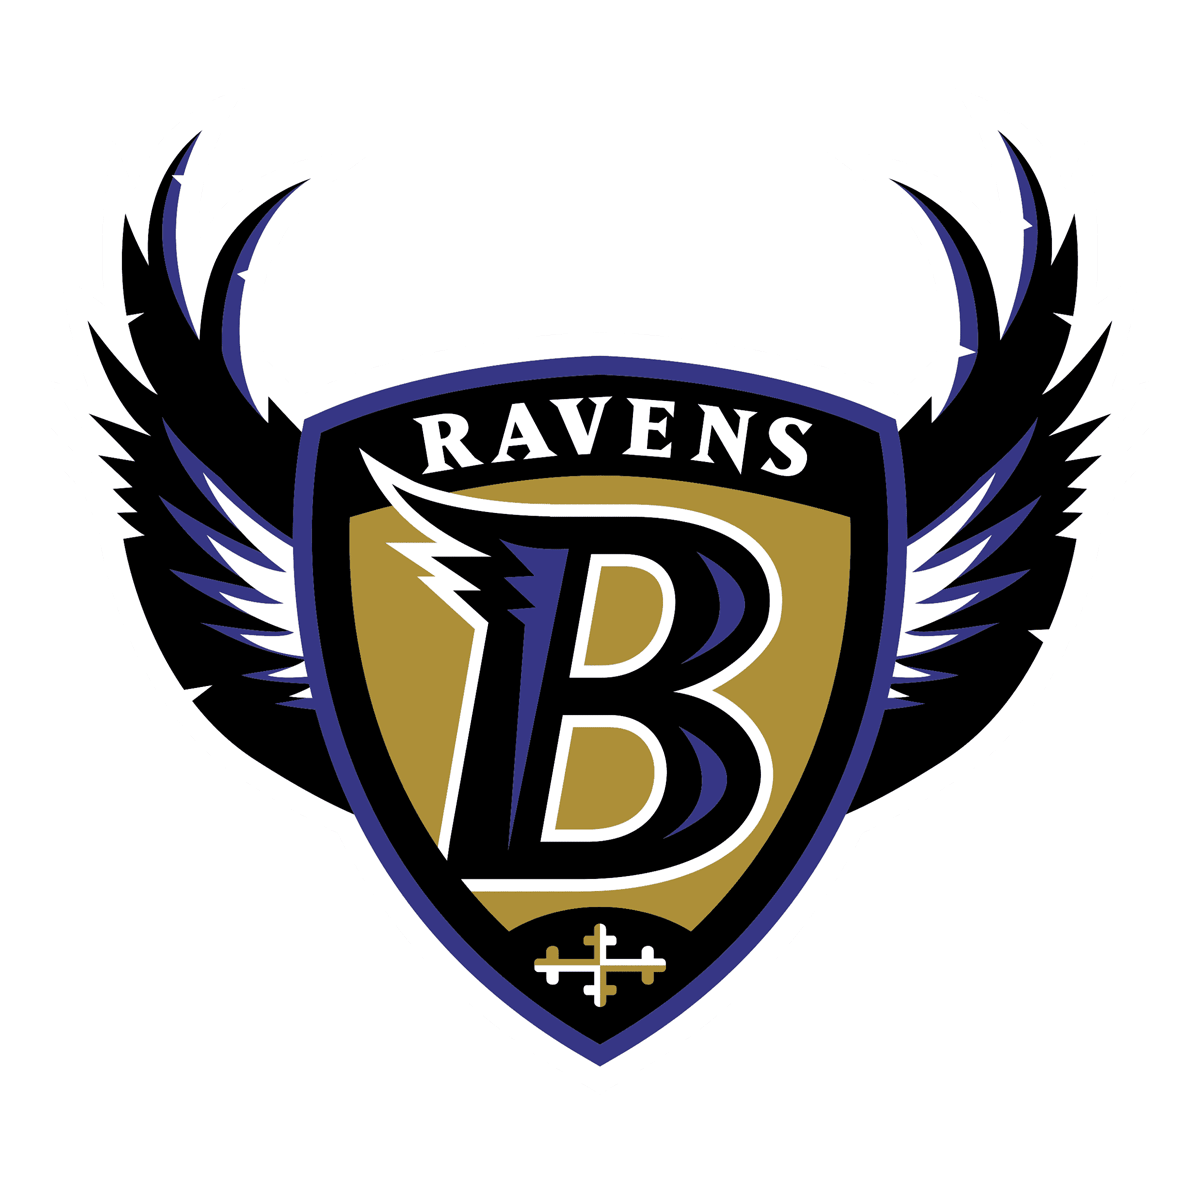 Baltimore Ravens 1996-1998 logo